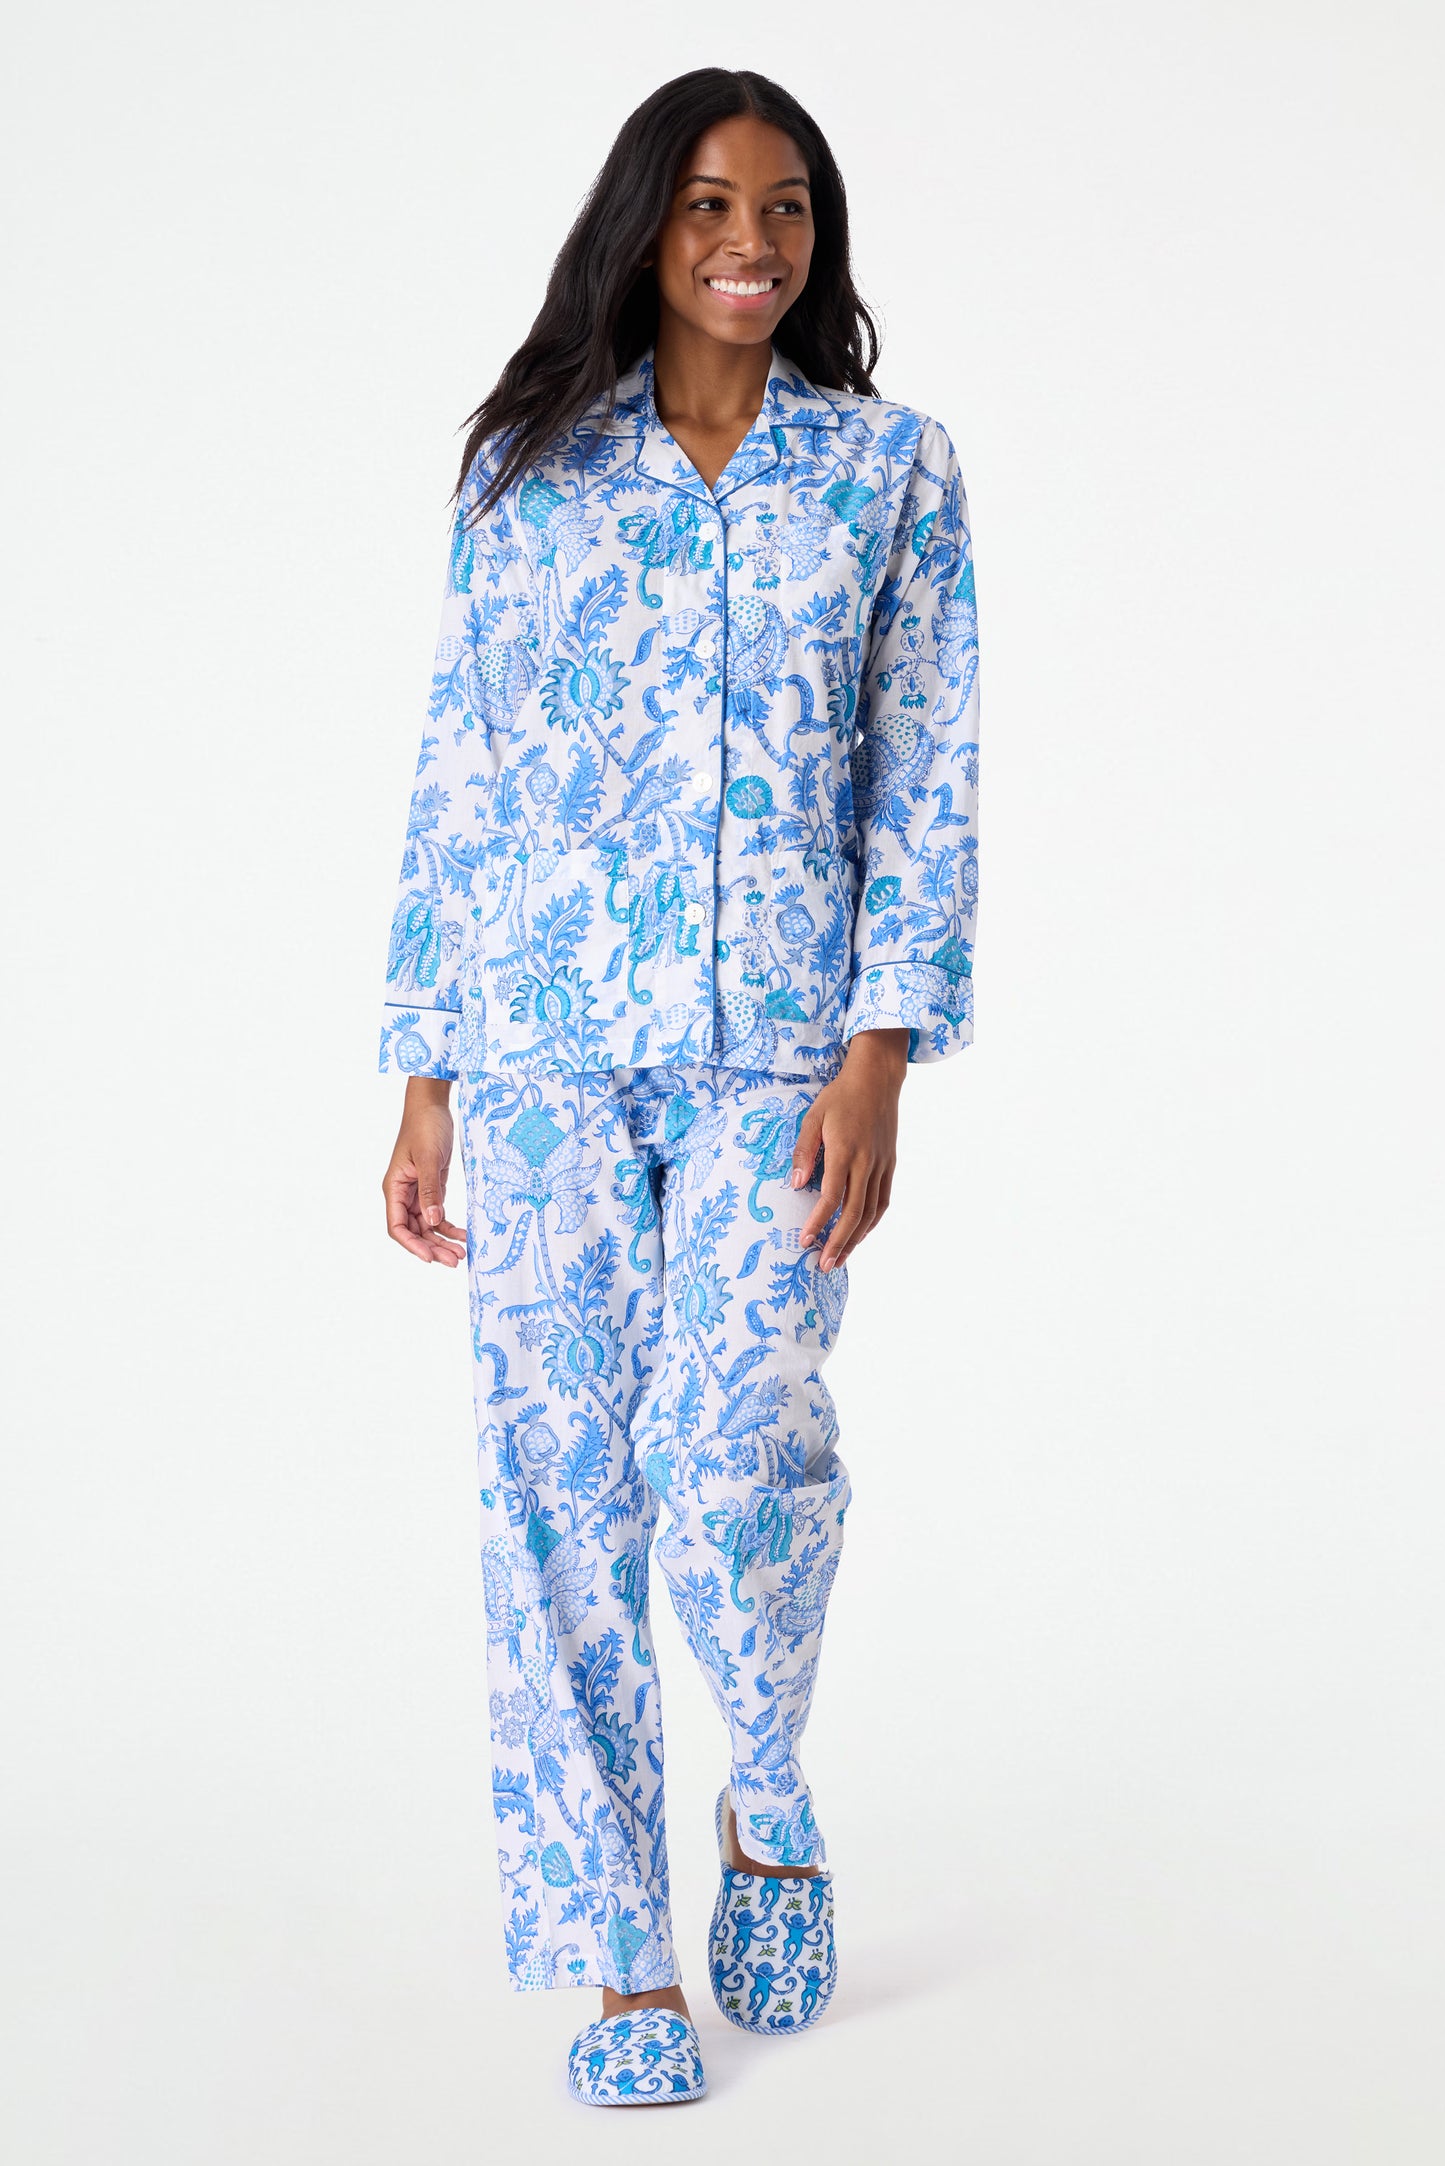 RQYYD Women's 2 Piece Plush Fleece Pajama Set,Long Sleeve Tops Pants Zipper  Sweatsuit Set Warm Loungewear Sleepwear on Clearance (Blue,L) 